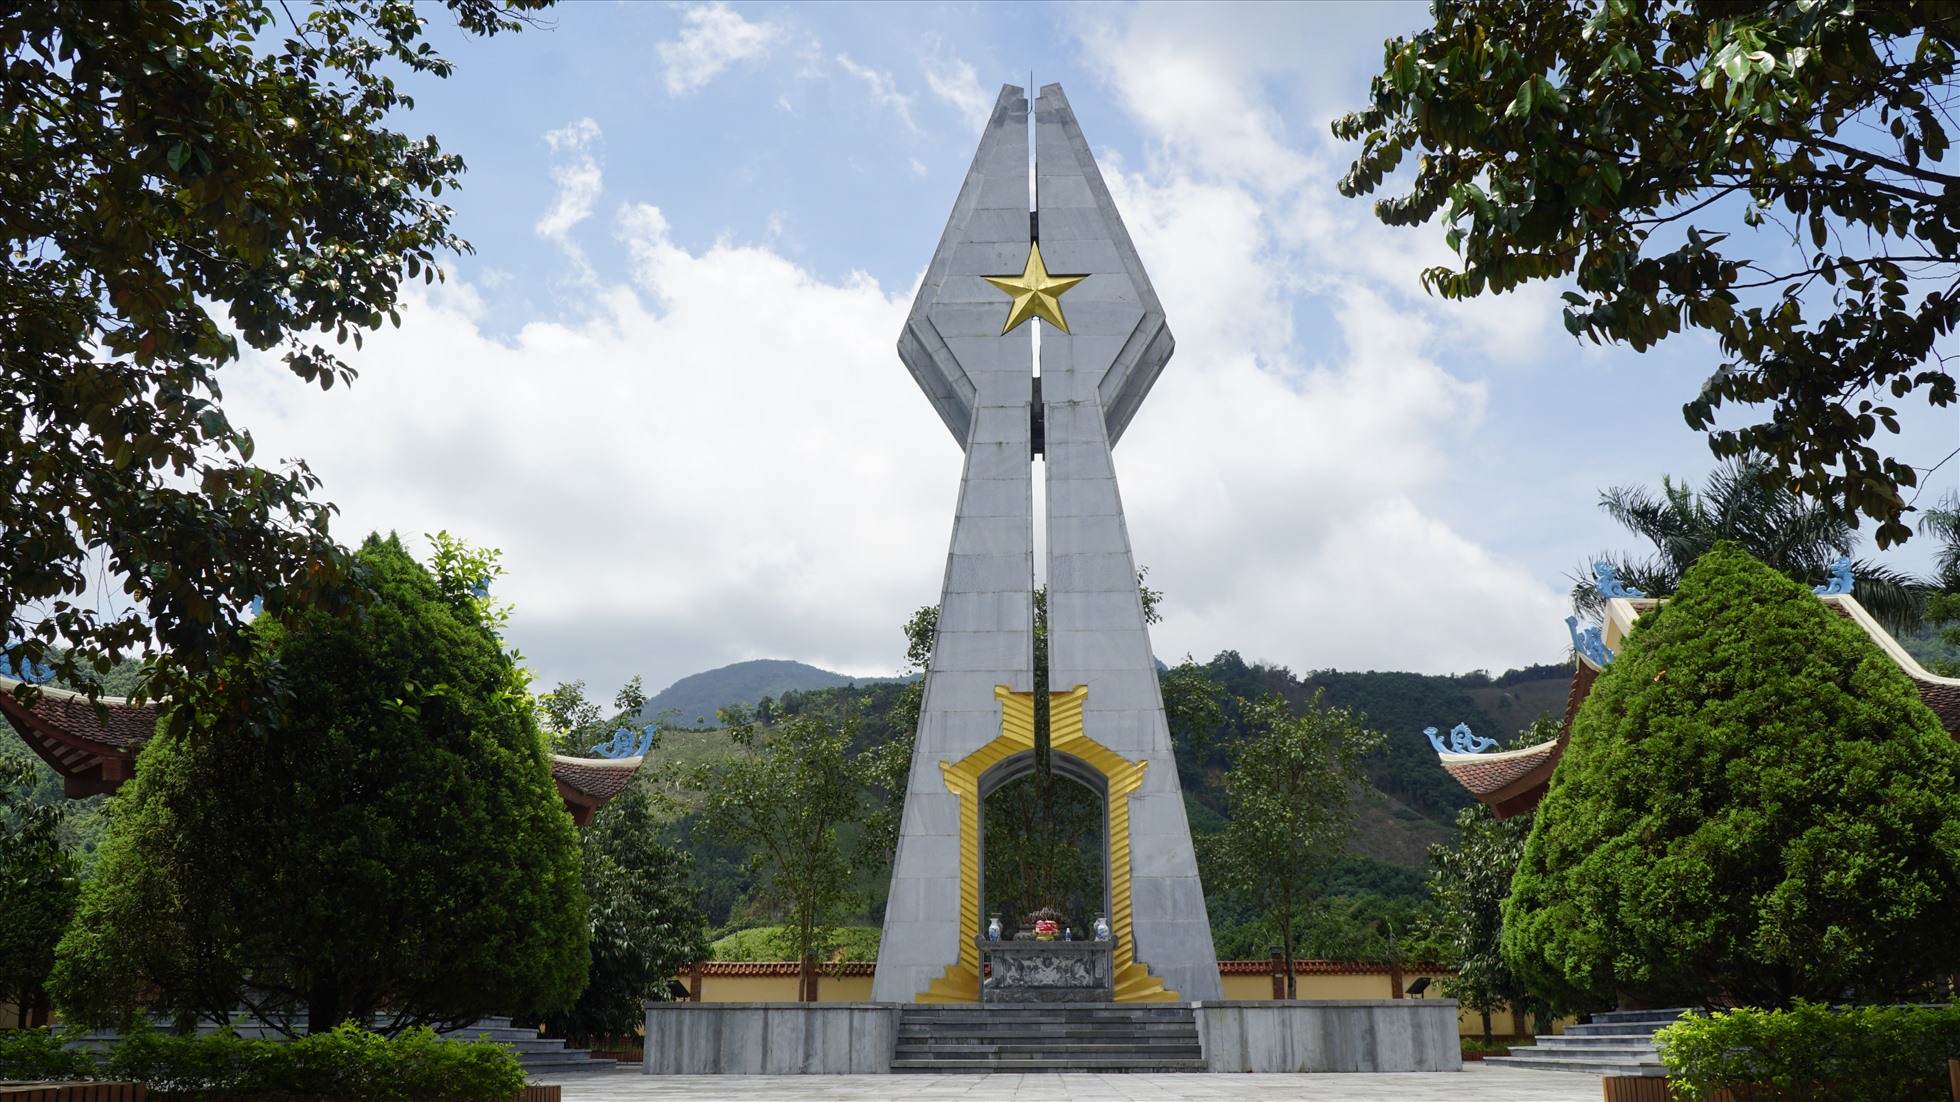 Khu di tích lịch sử Pò Hèn (xã Hải Sơn, TP Móng Cái) - nơi tưởng niệm, ghi danh các chiến sỹ đã hy sinh trong cuộc chiến tranh bảo vệ Biên giới năm 1979. Ảnh: Nguyễn Hưng